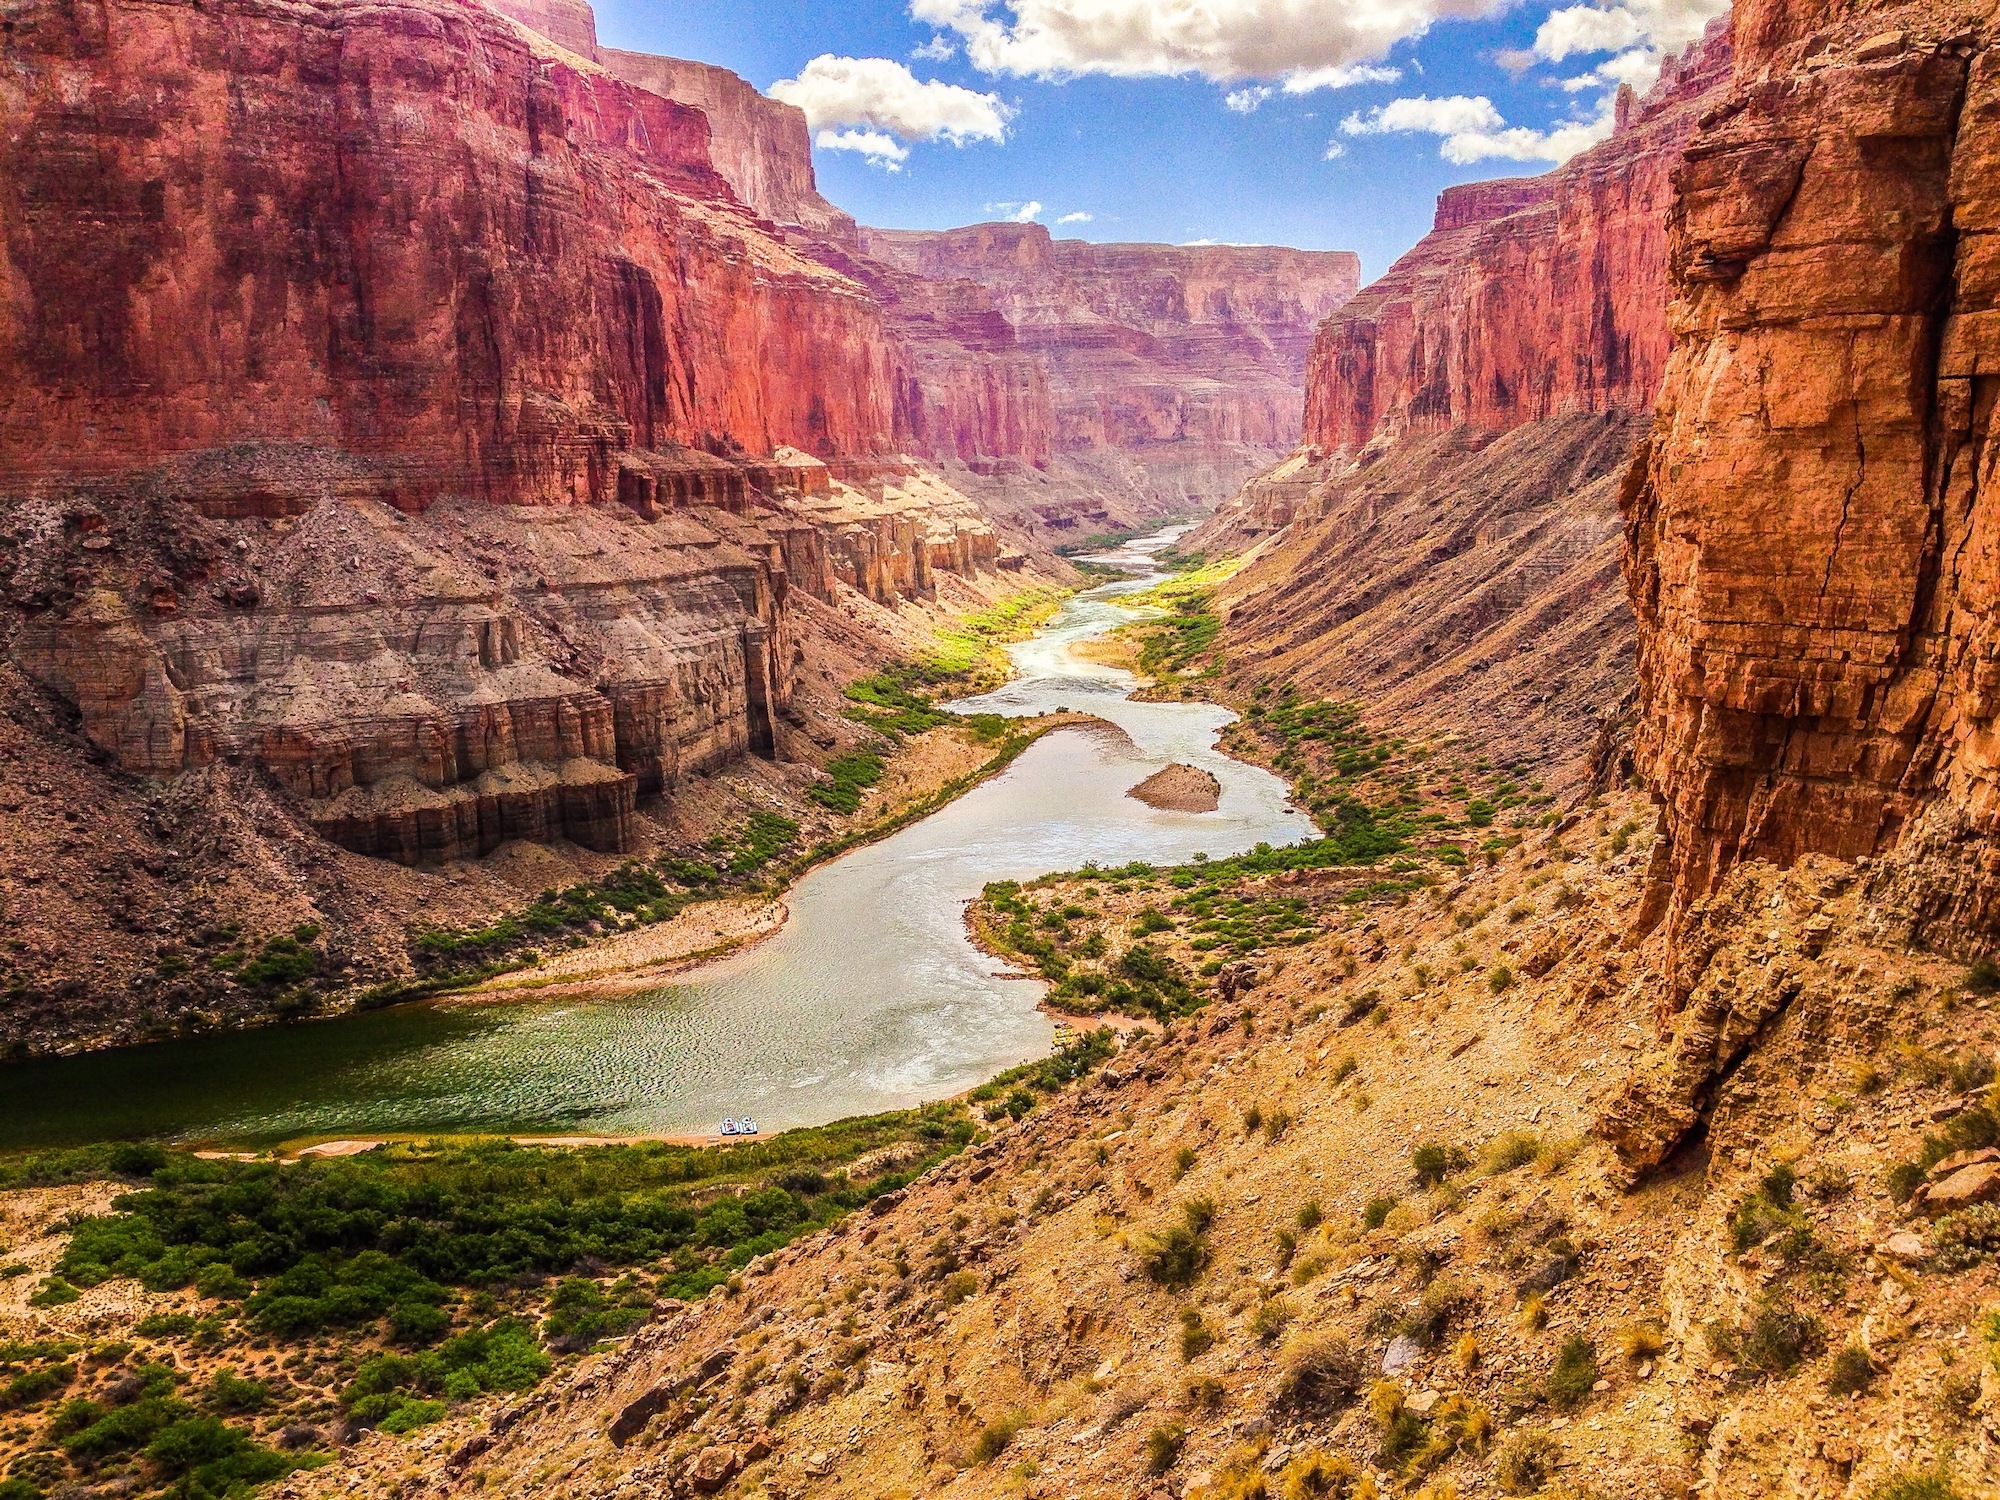 grand canyon colorado river